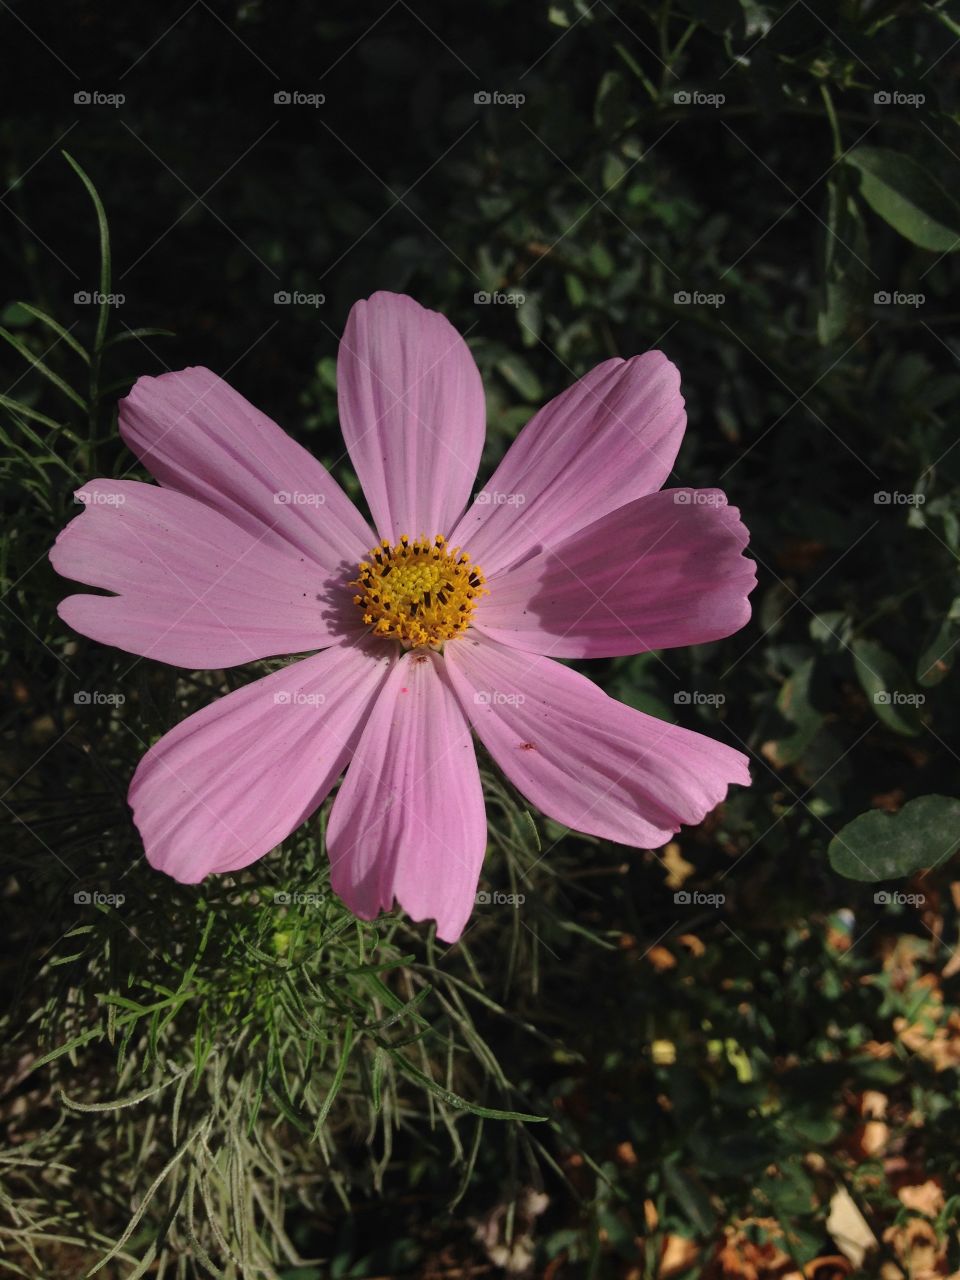 Beautiful pink flower taken in fall